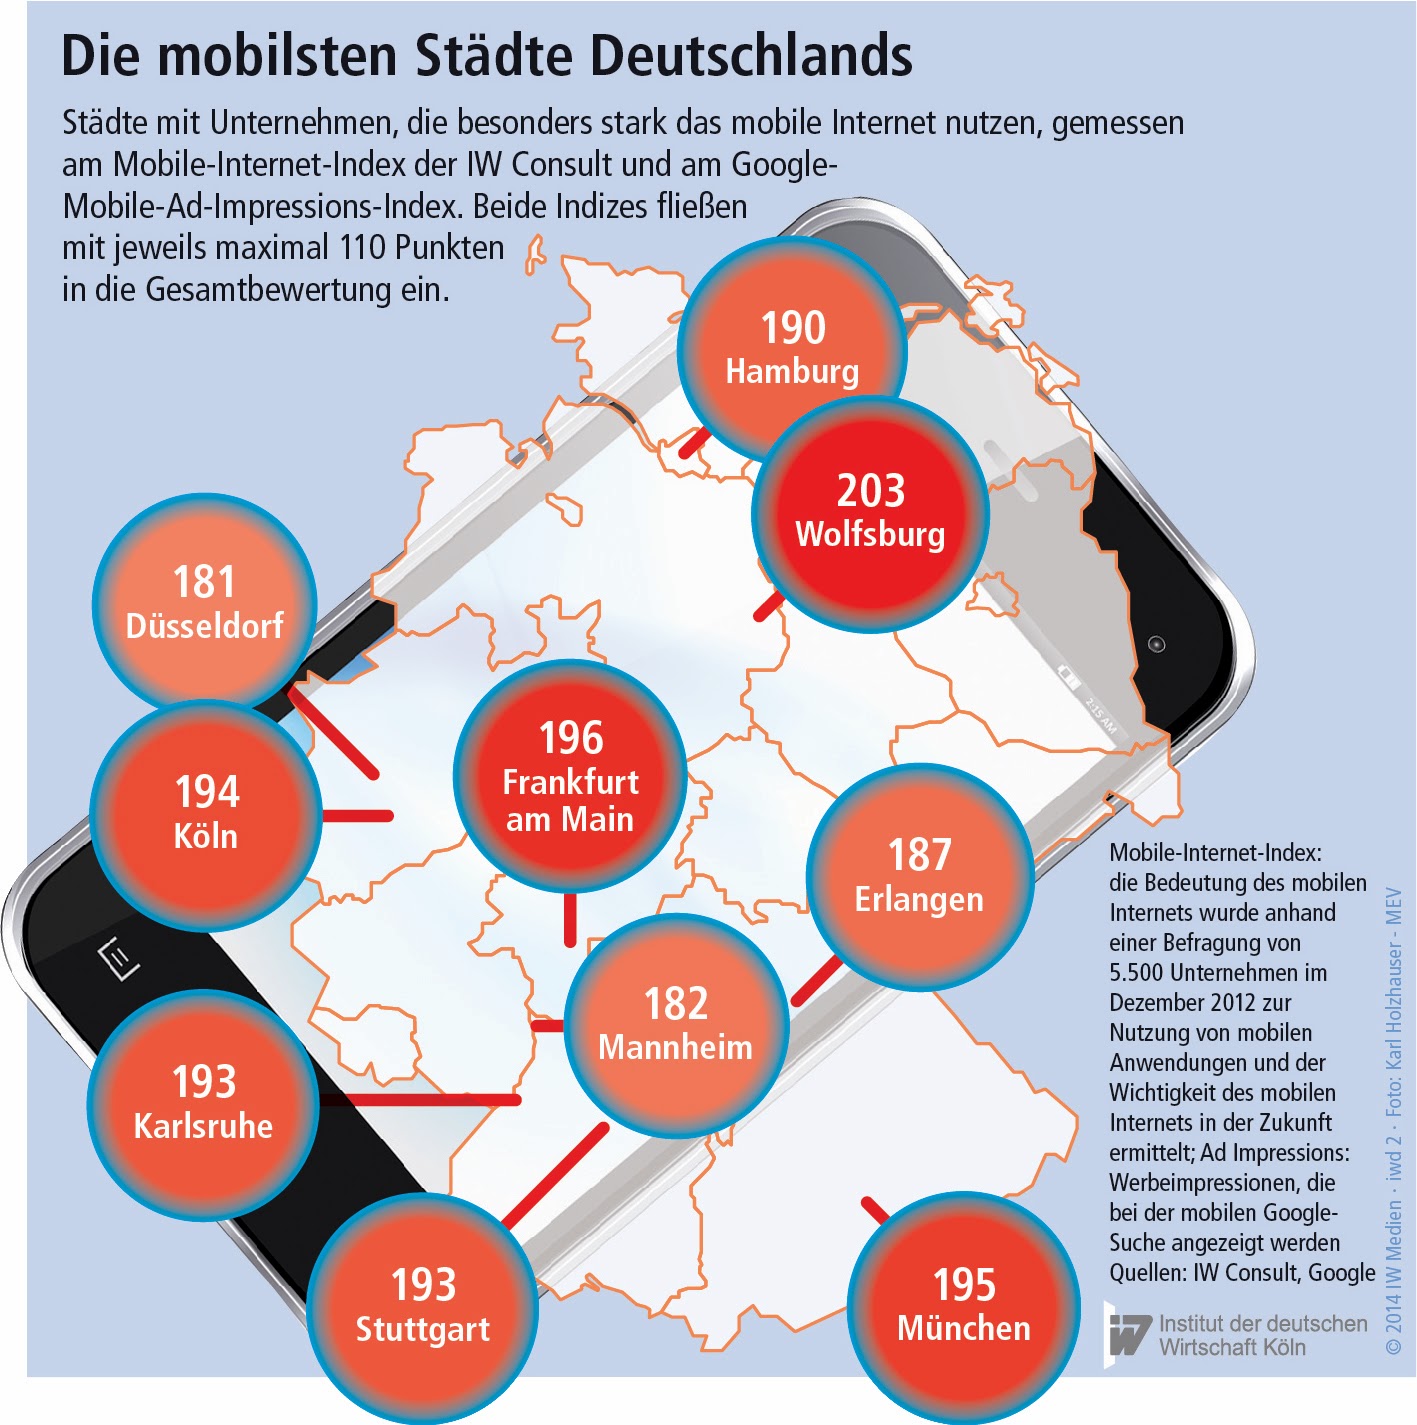 Eine Darstellung der mobilsten Städte Deutschlands.